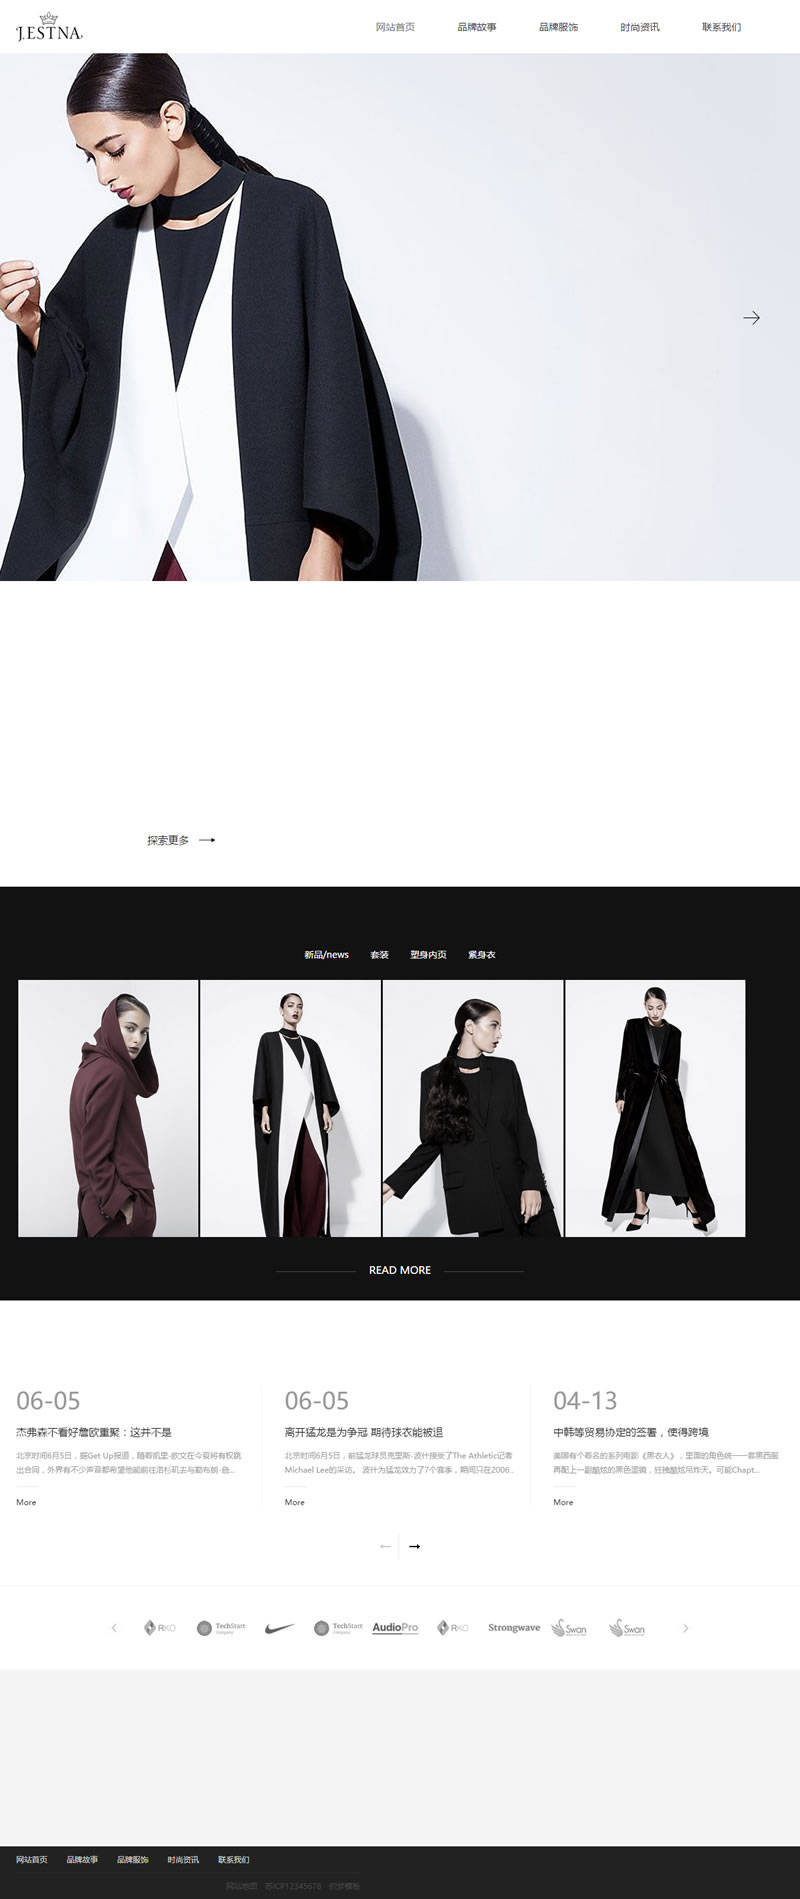 网站源码分享下载 织梦dedecms响应式品牌服装时装设计企业网站模板(自适应手机移动端)